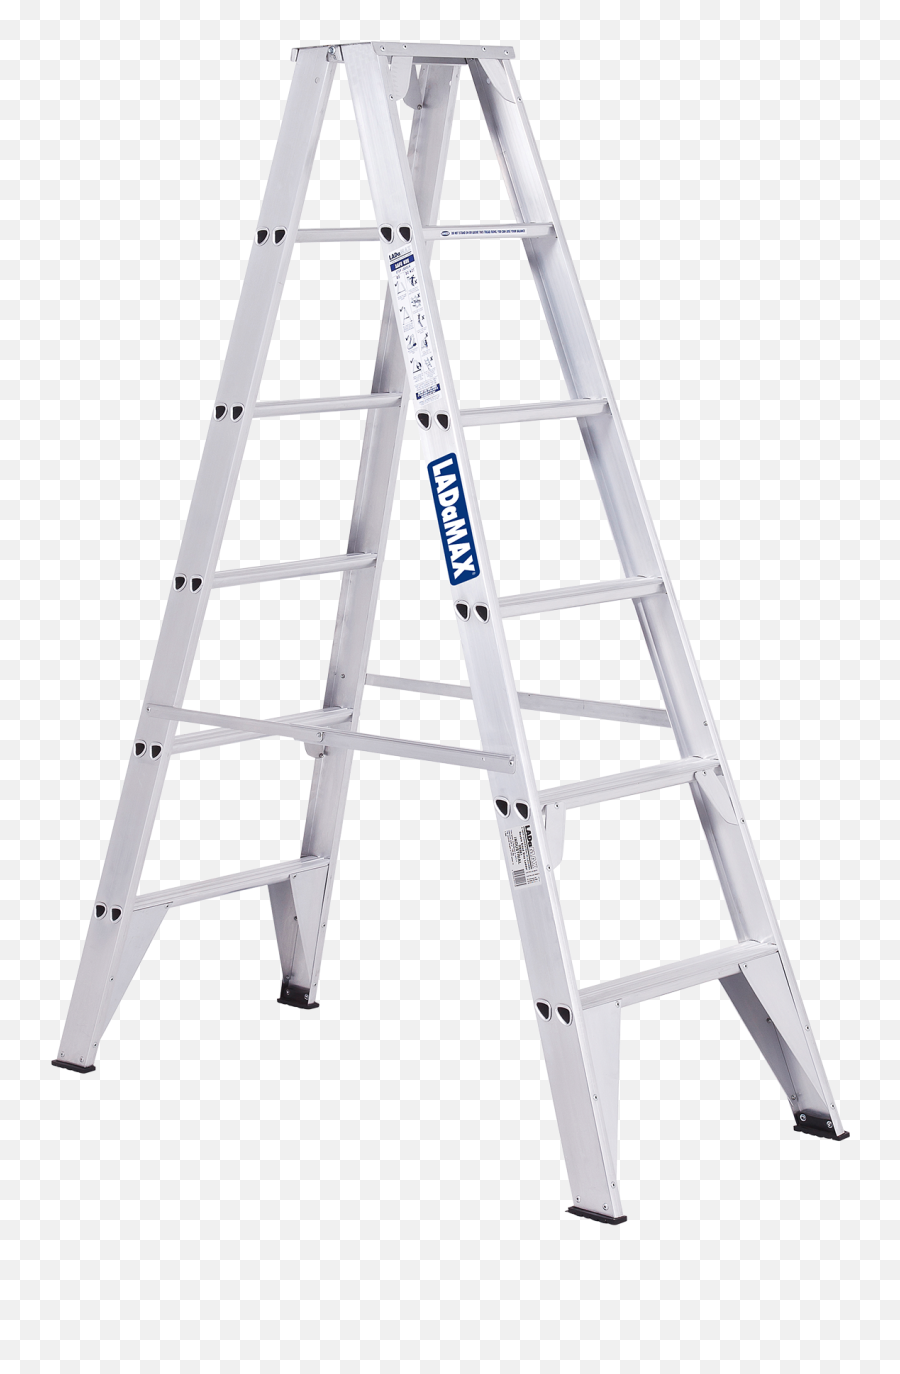 Ladder Png Image File - Ladder,Ladder Png